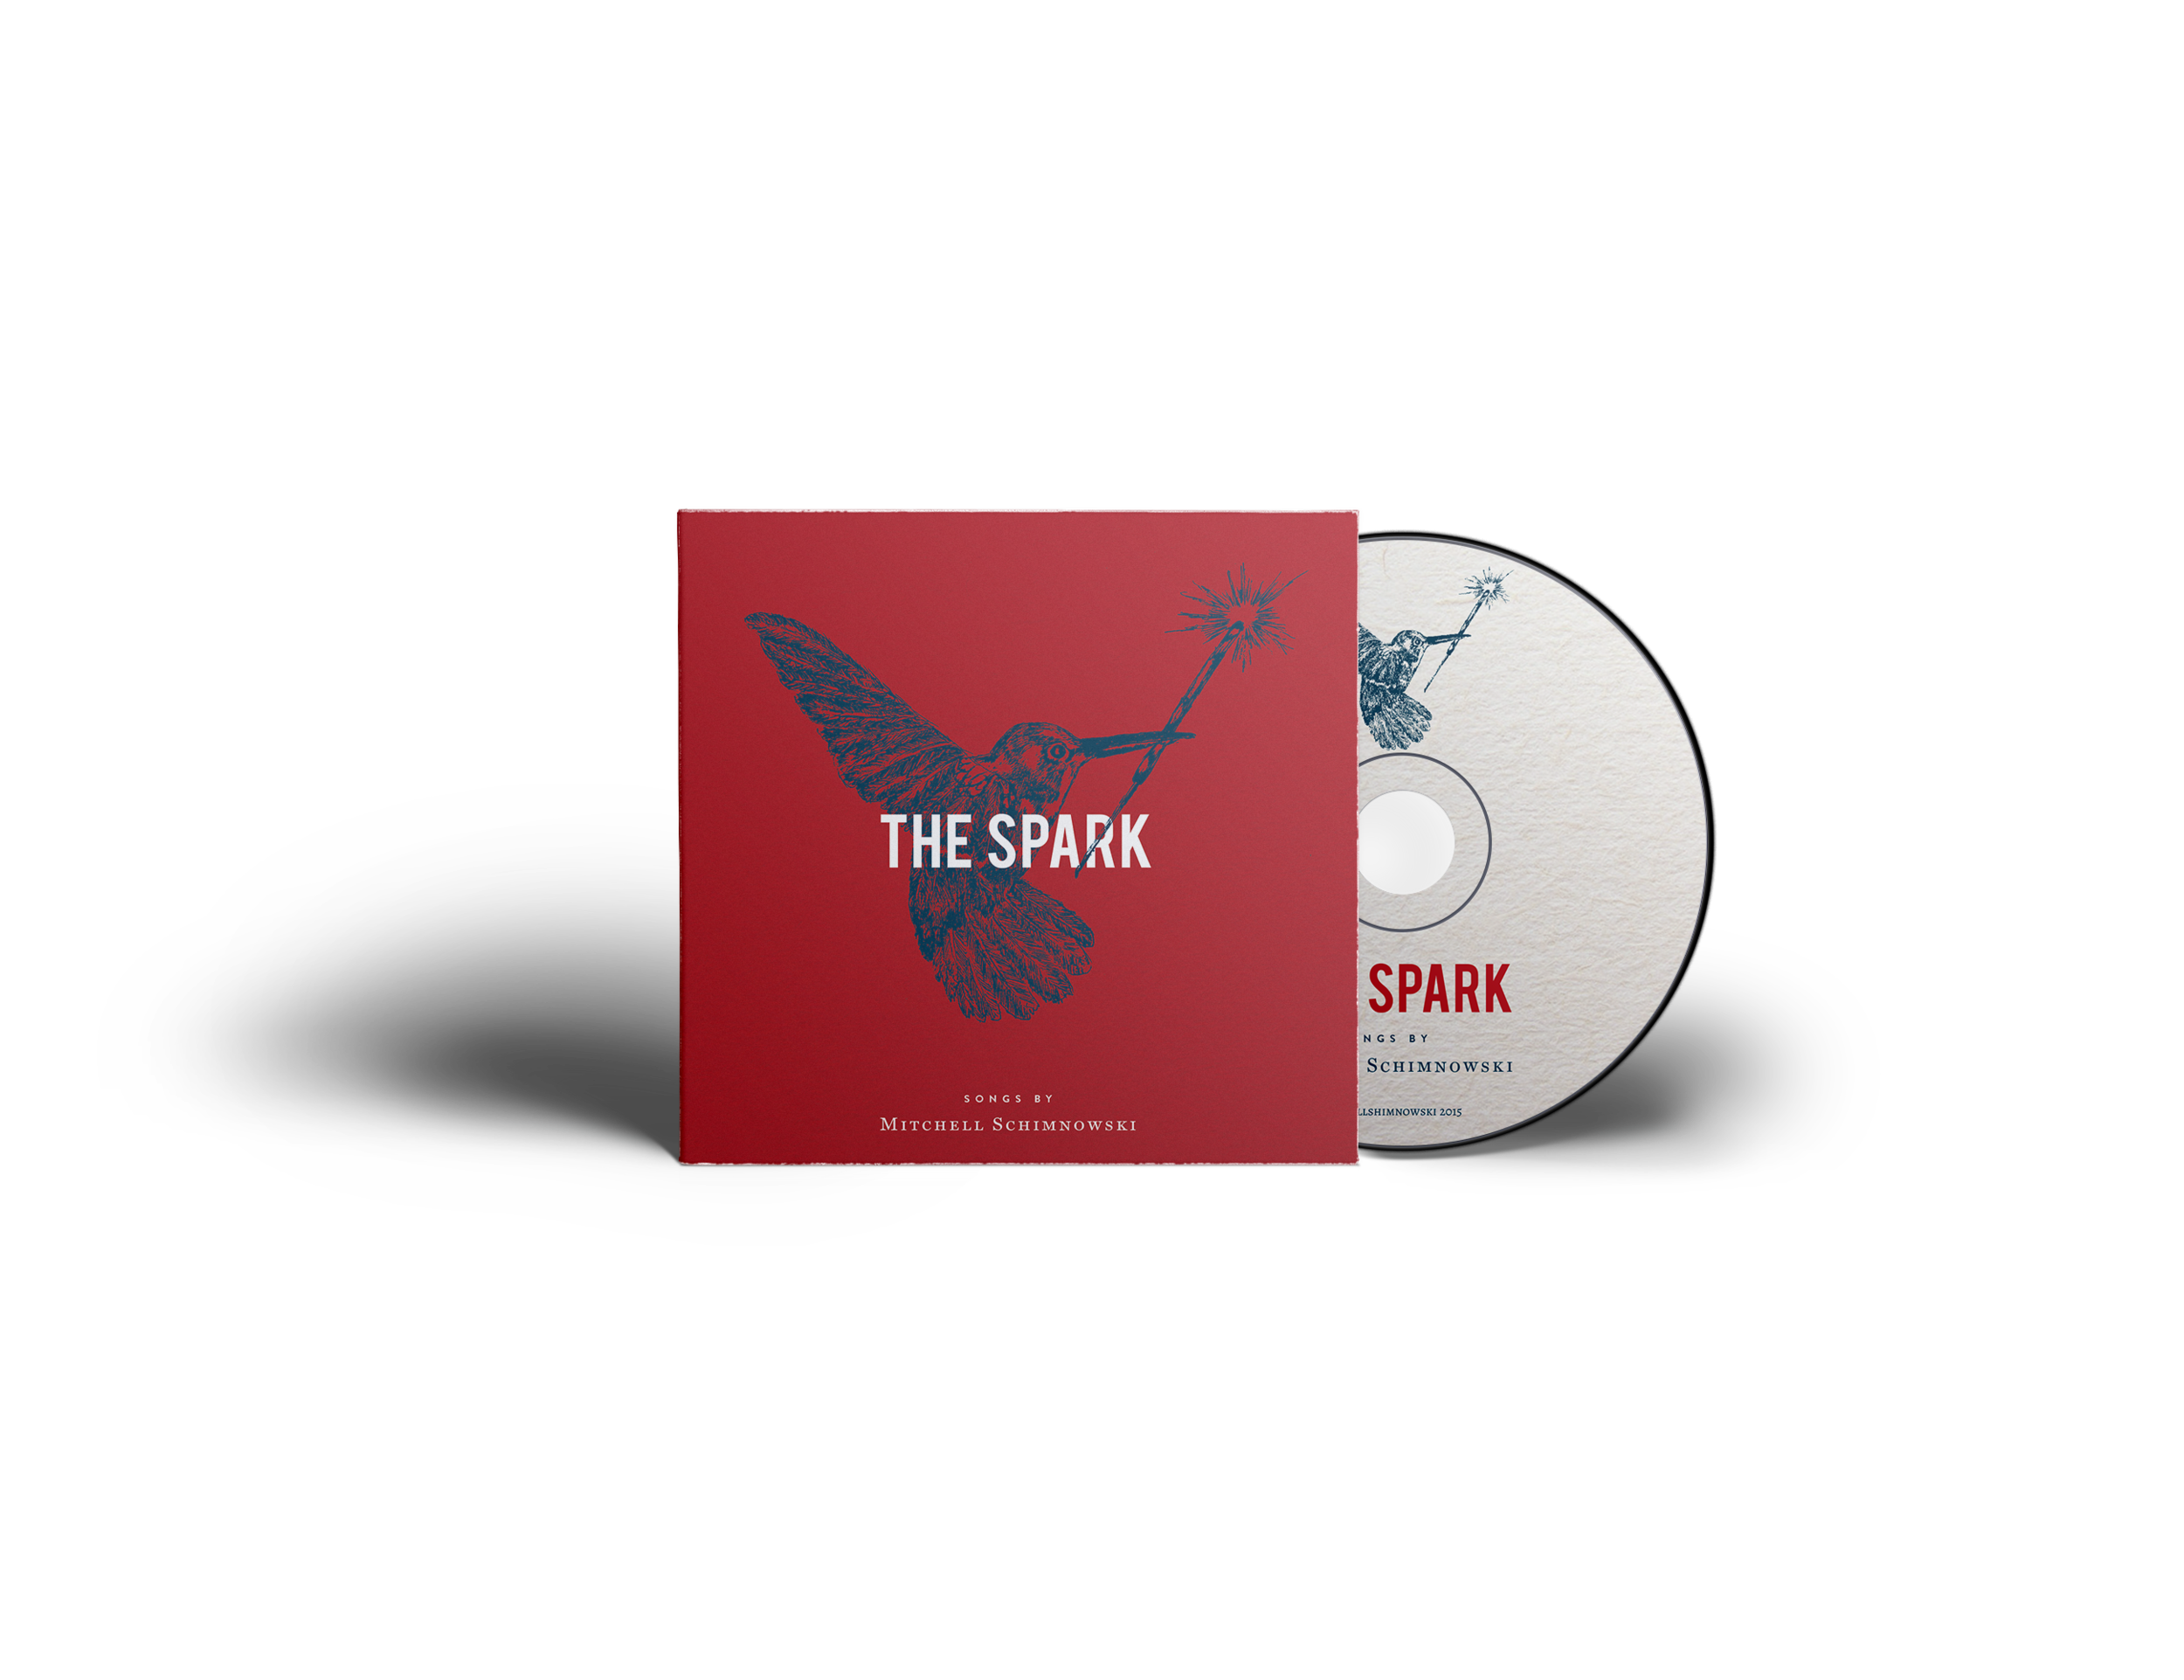 The Spark by Mitchell Schimnowski